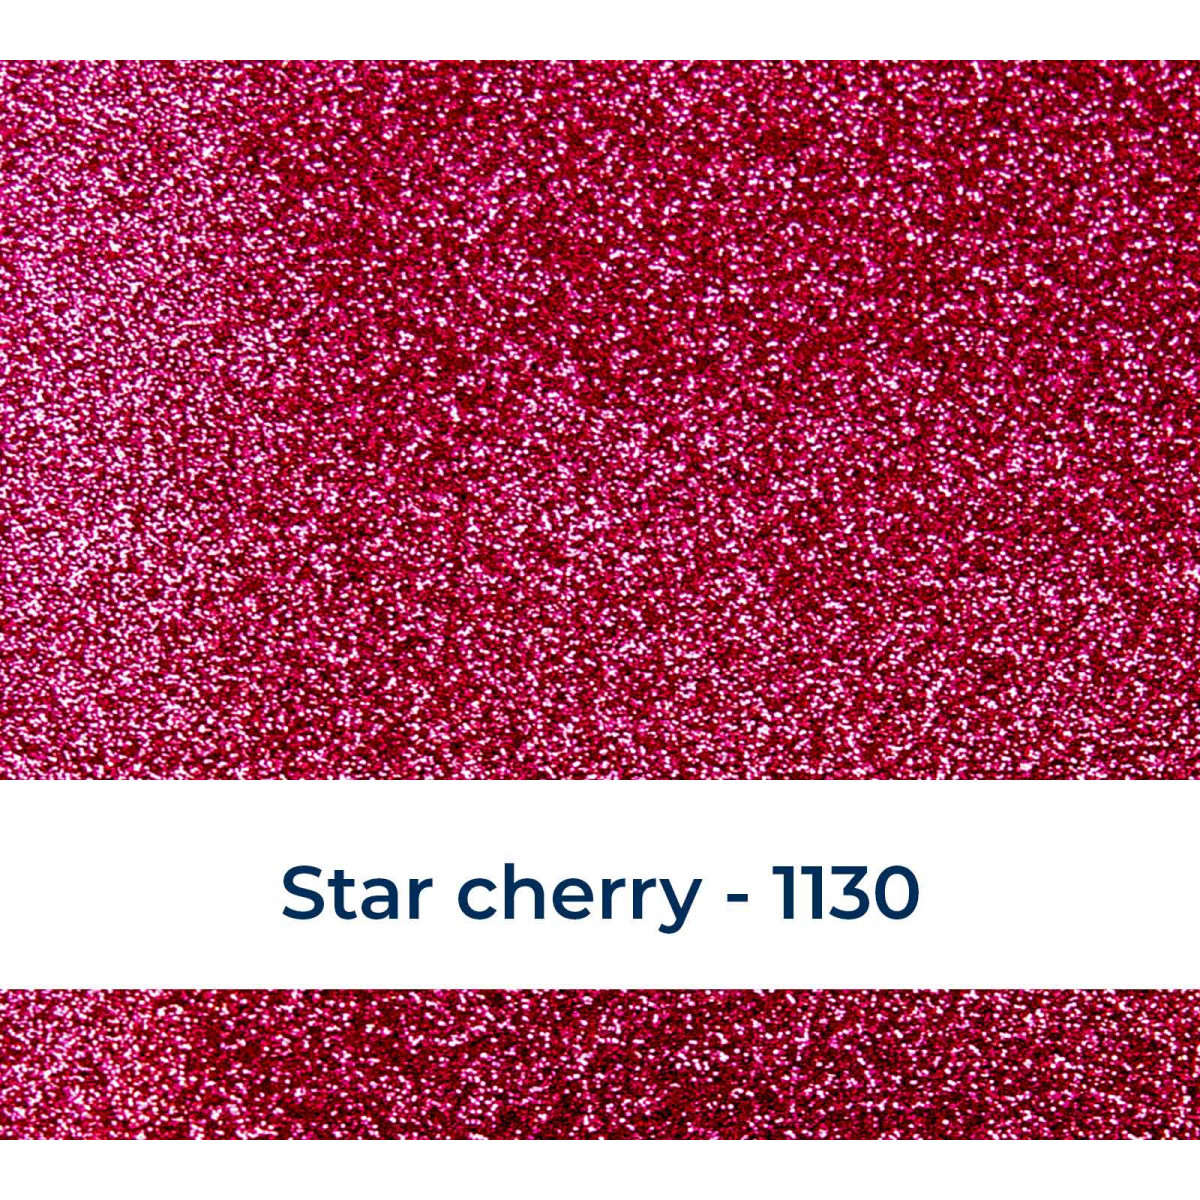 Bling-Bling Star cherry 1130